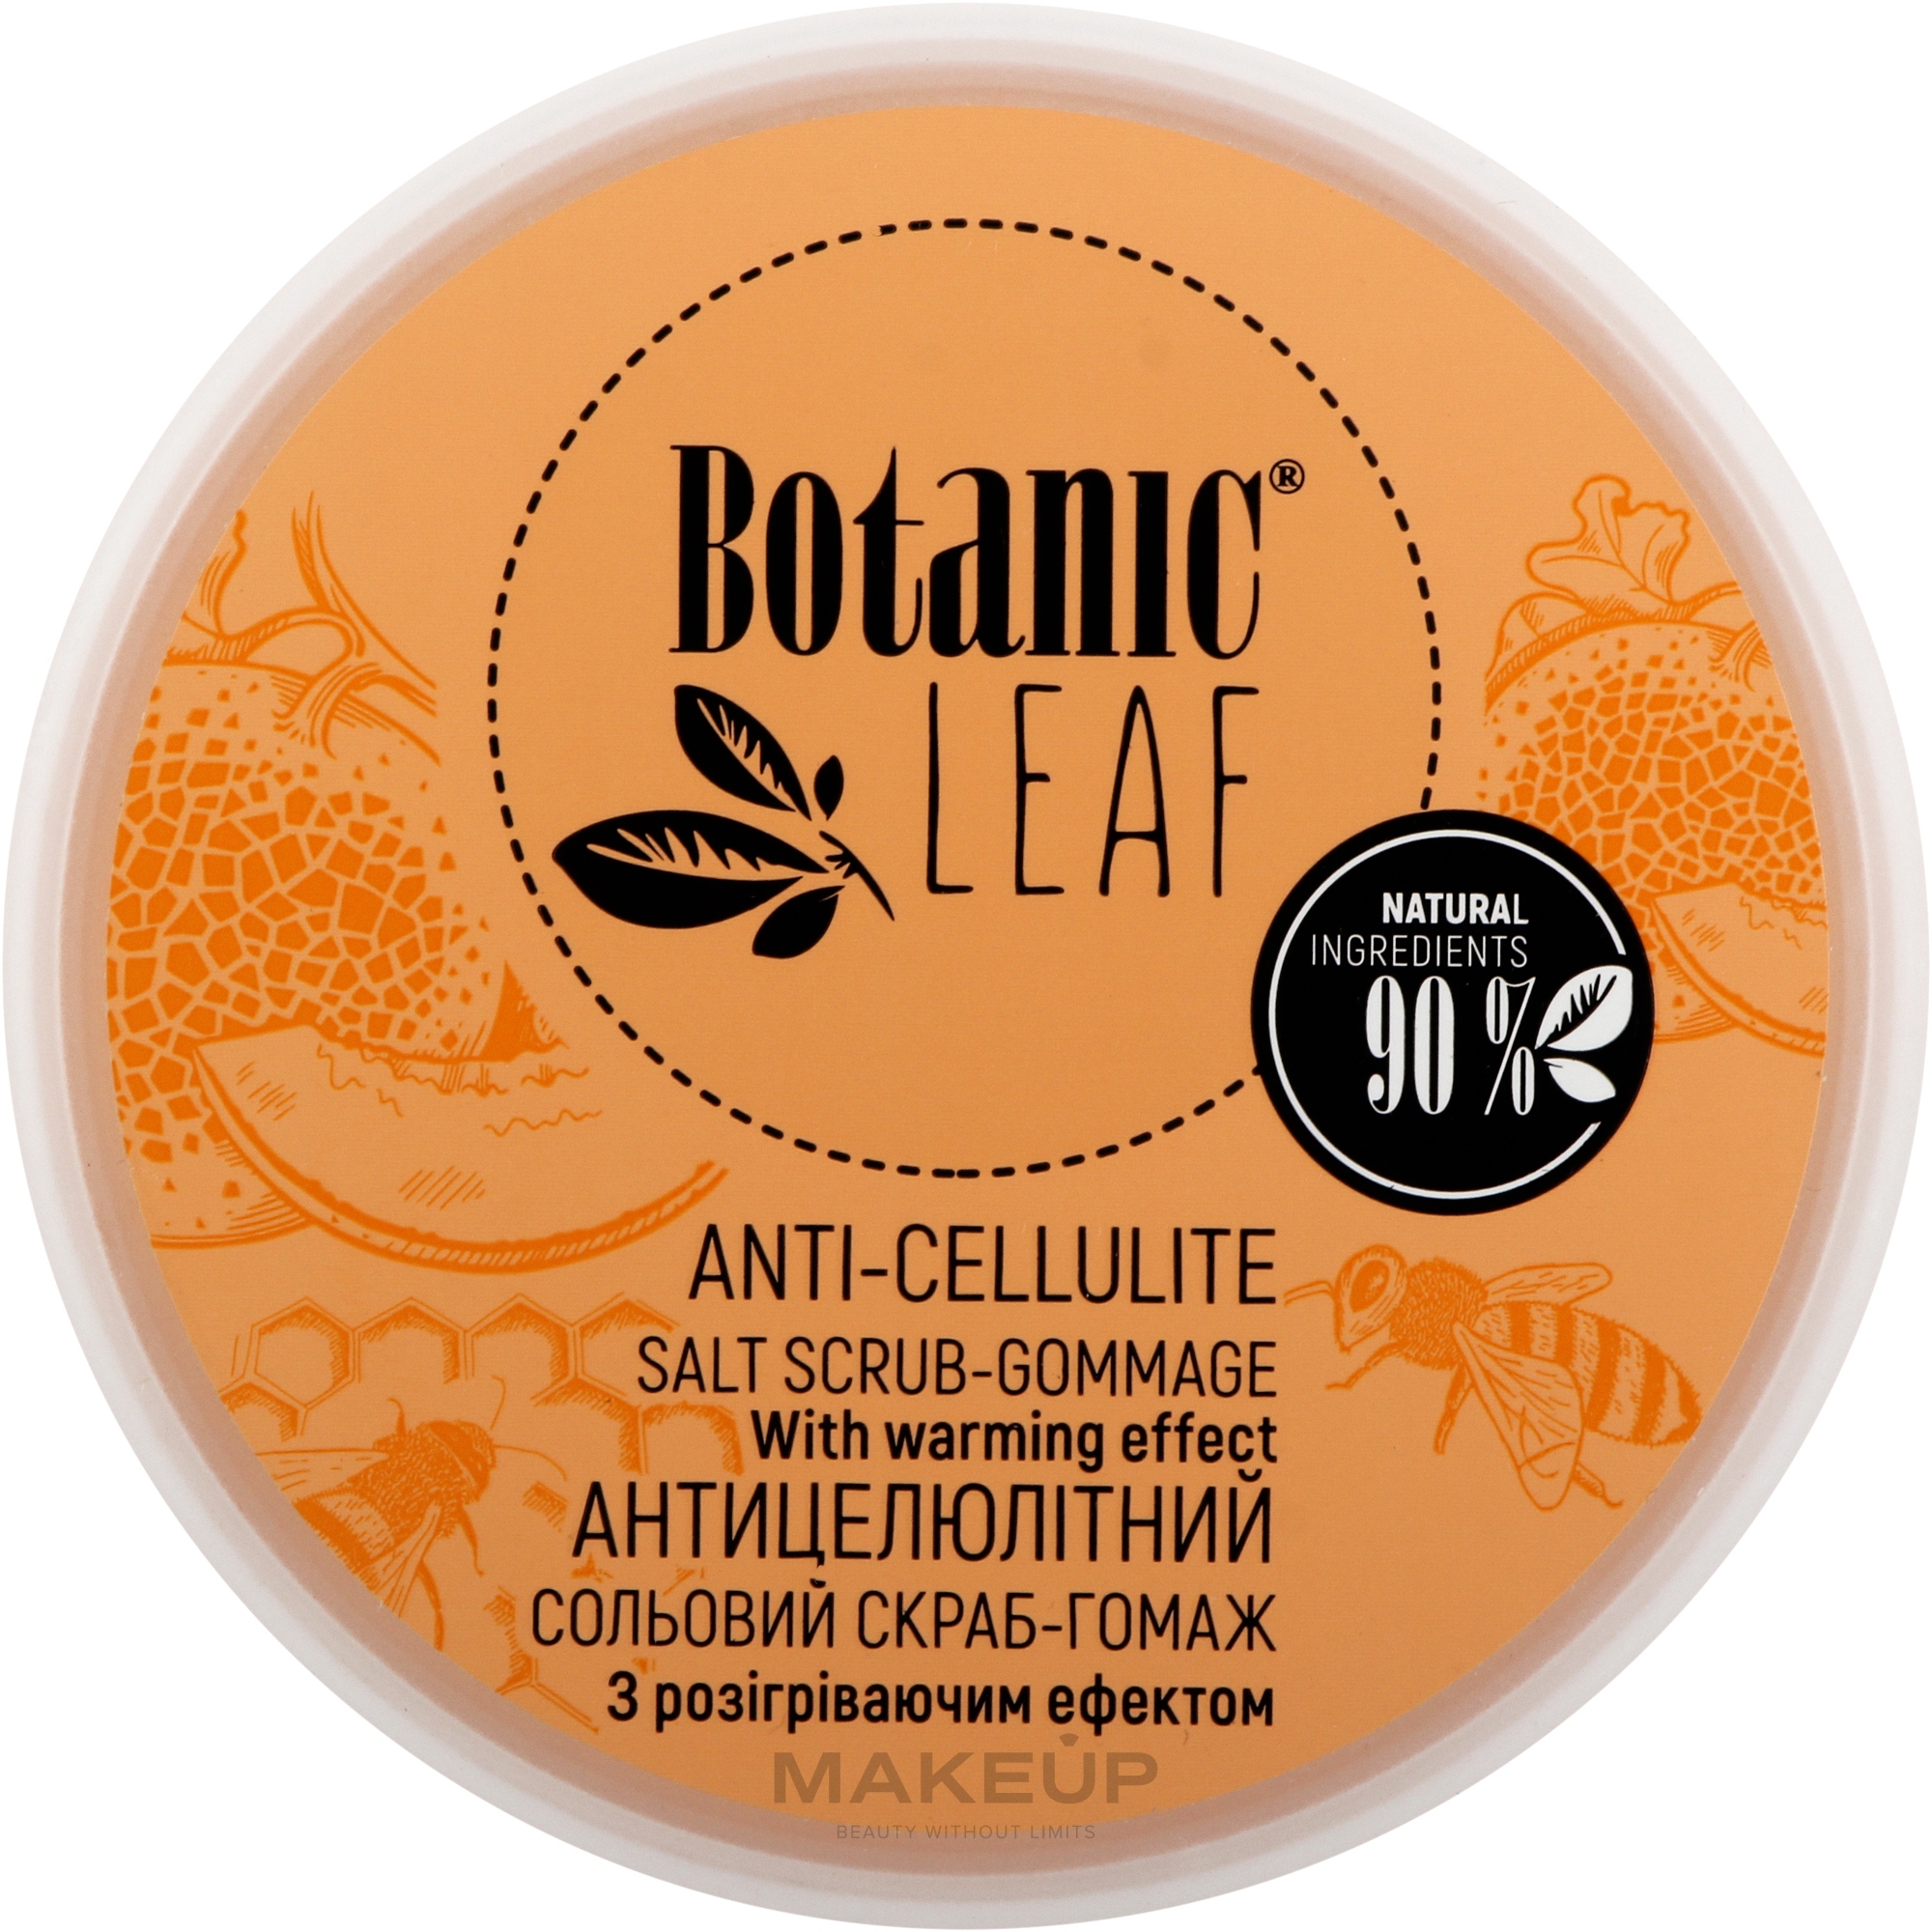 Скраб-гомаж сольовий антицелюлітний для тіла - Botanic Leaf Anti-Cellulite Salt Scrub-Gommage — фото 300g